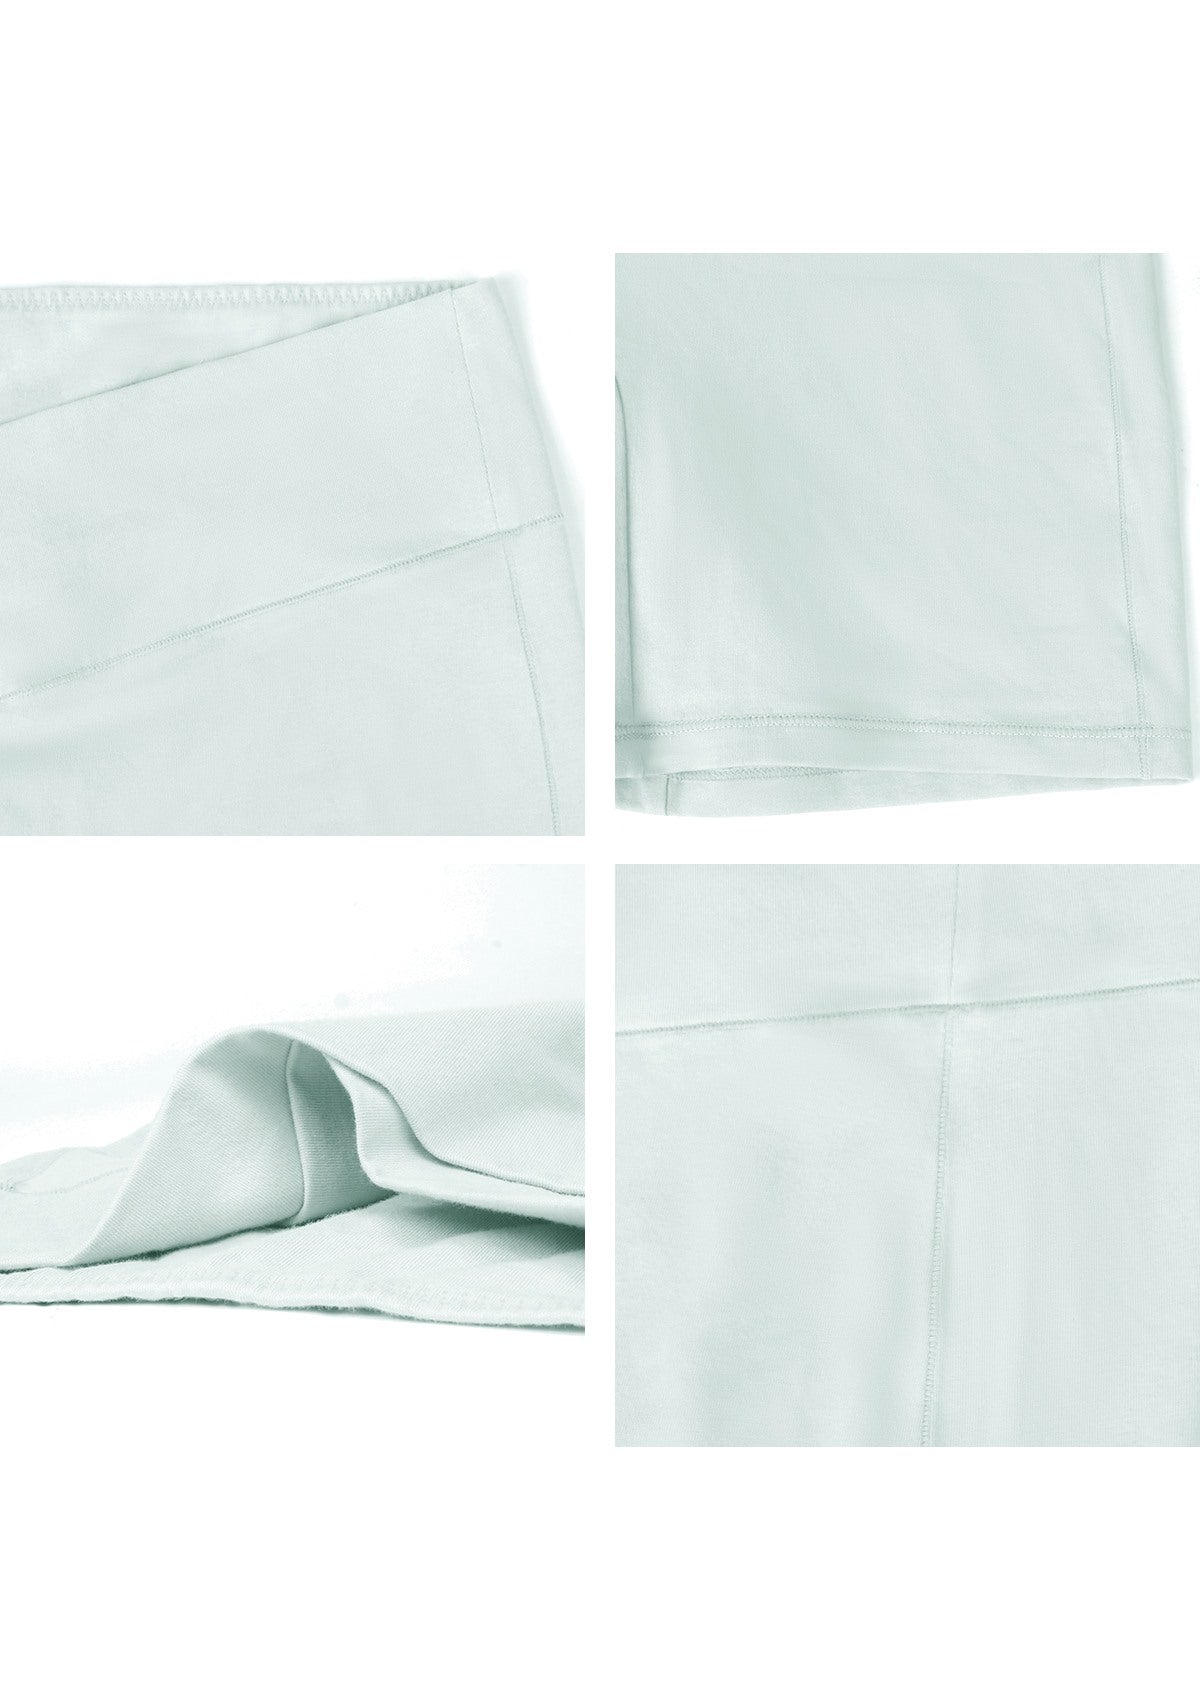 All-Day Comfort High-Rise Cotton Boyshorts Underwear 3 Pack - M / Black+White+Beige